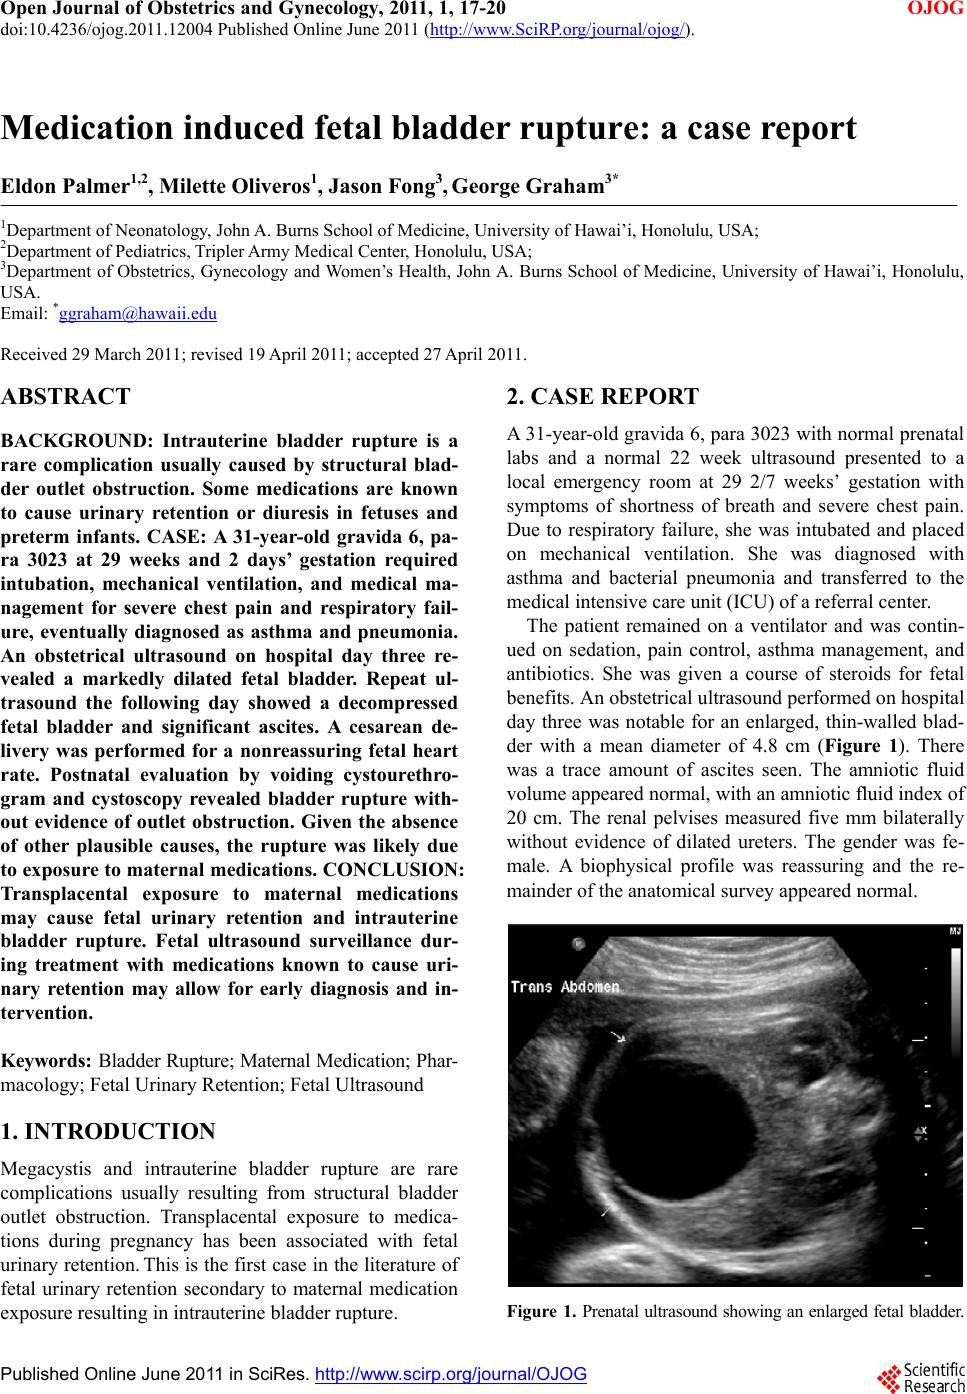 Medication induced fetal bladder rupture: a case report